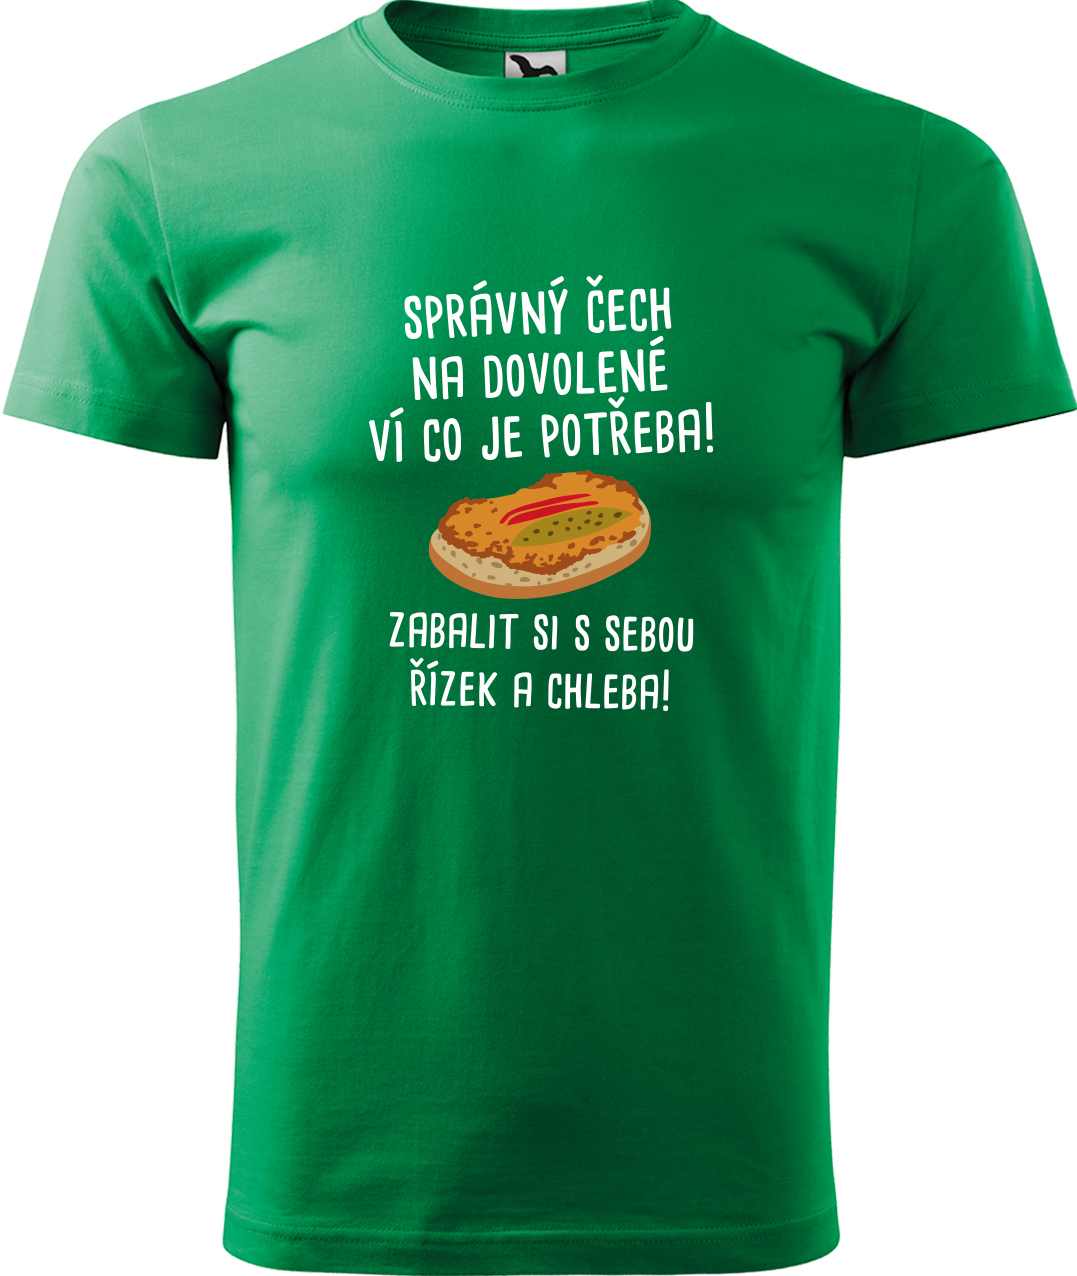 Pánské cestovatelské tričko - Správný Čech na dovolené, ví co je potřeba! Velikost: 2XL, Barva: Středně zelená (16), Střih: pánský